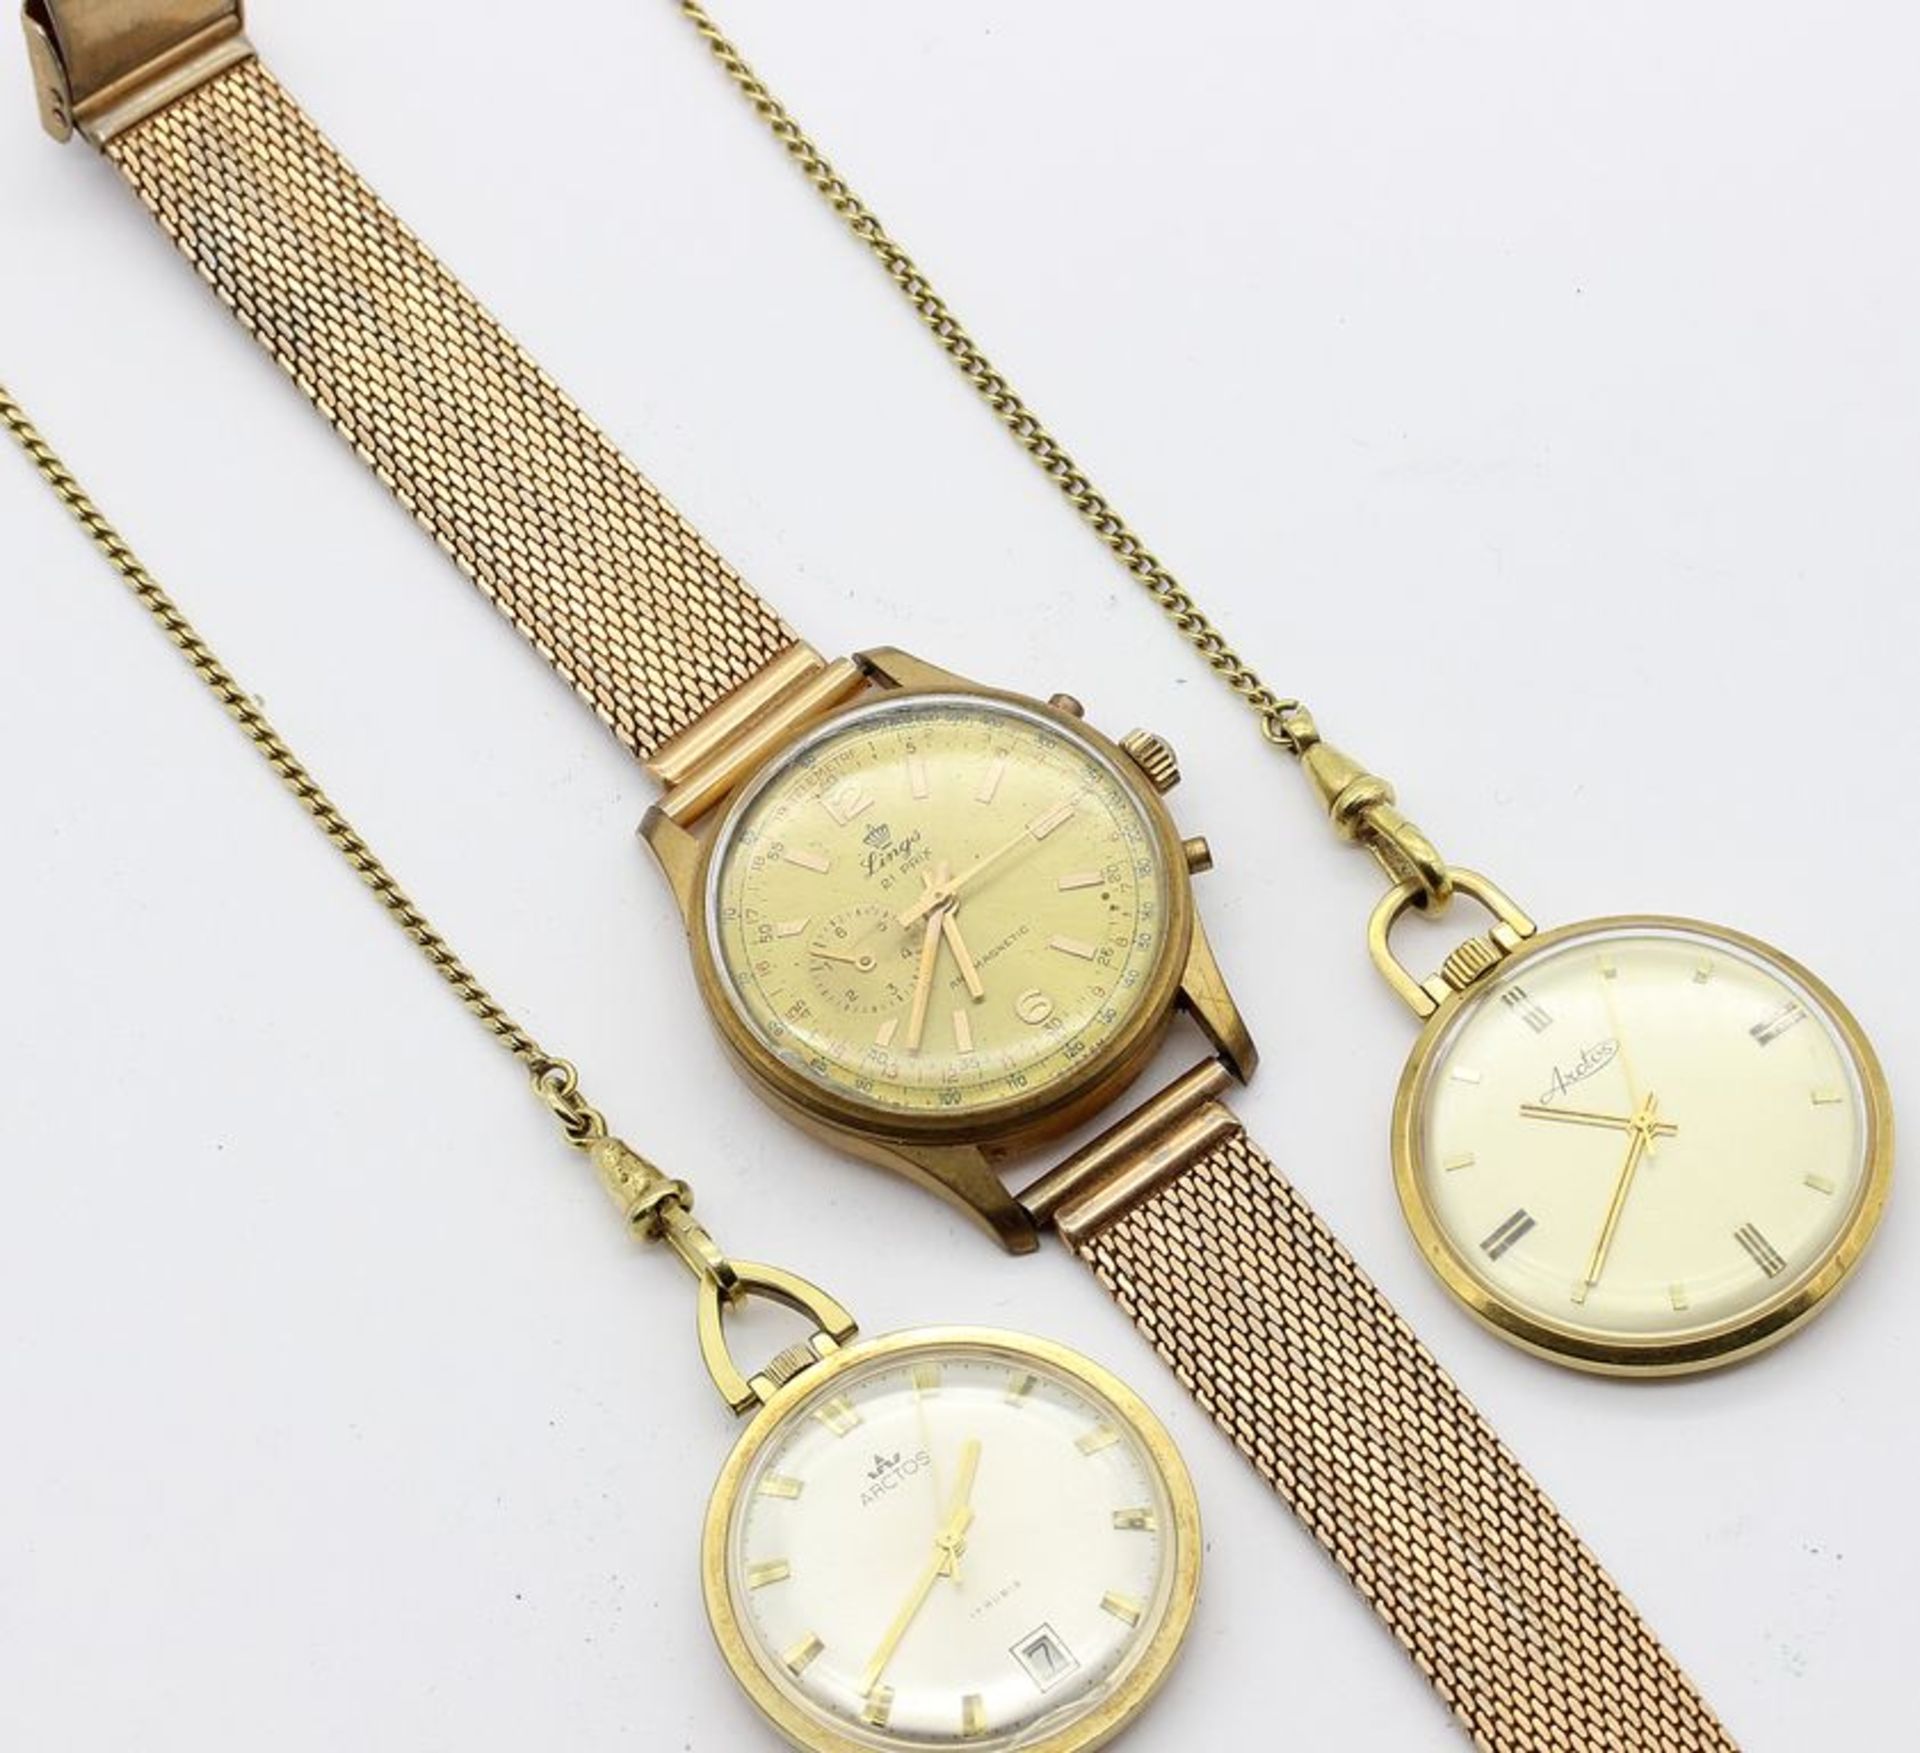 Herrenarmbanduhr und 2 Frackuhren an Uhrenketten. Doublé. a) Armbanduhr "Lings" mit S